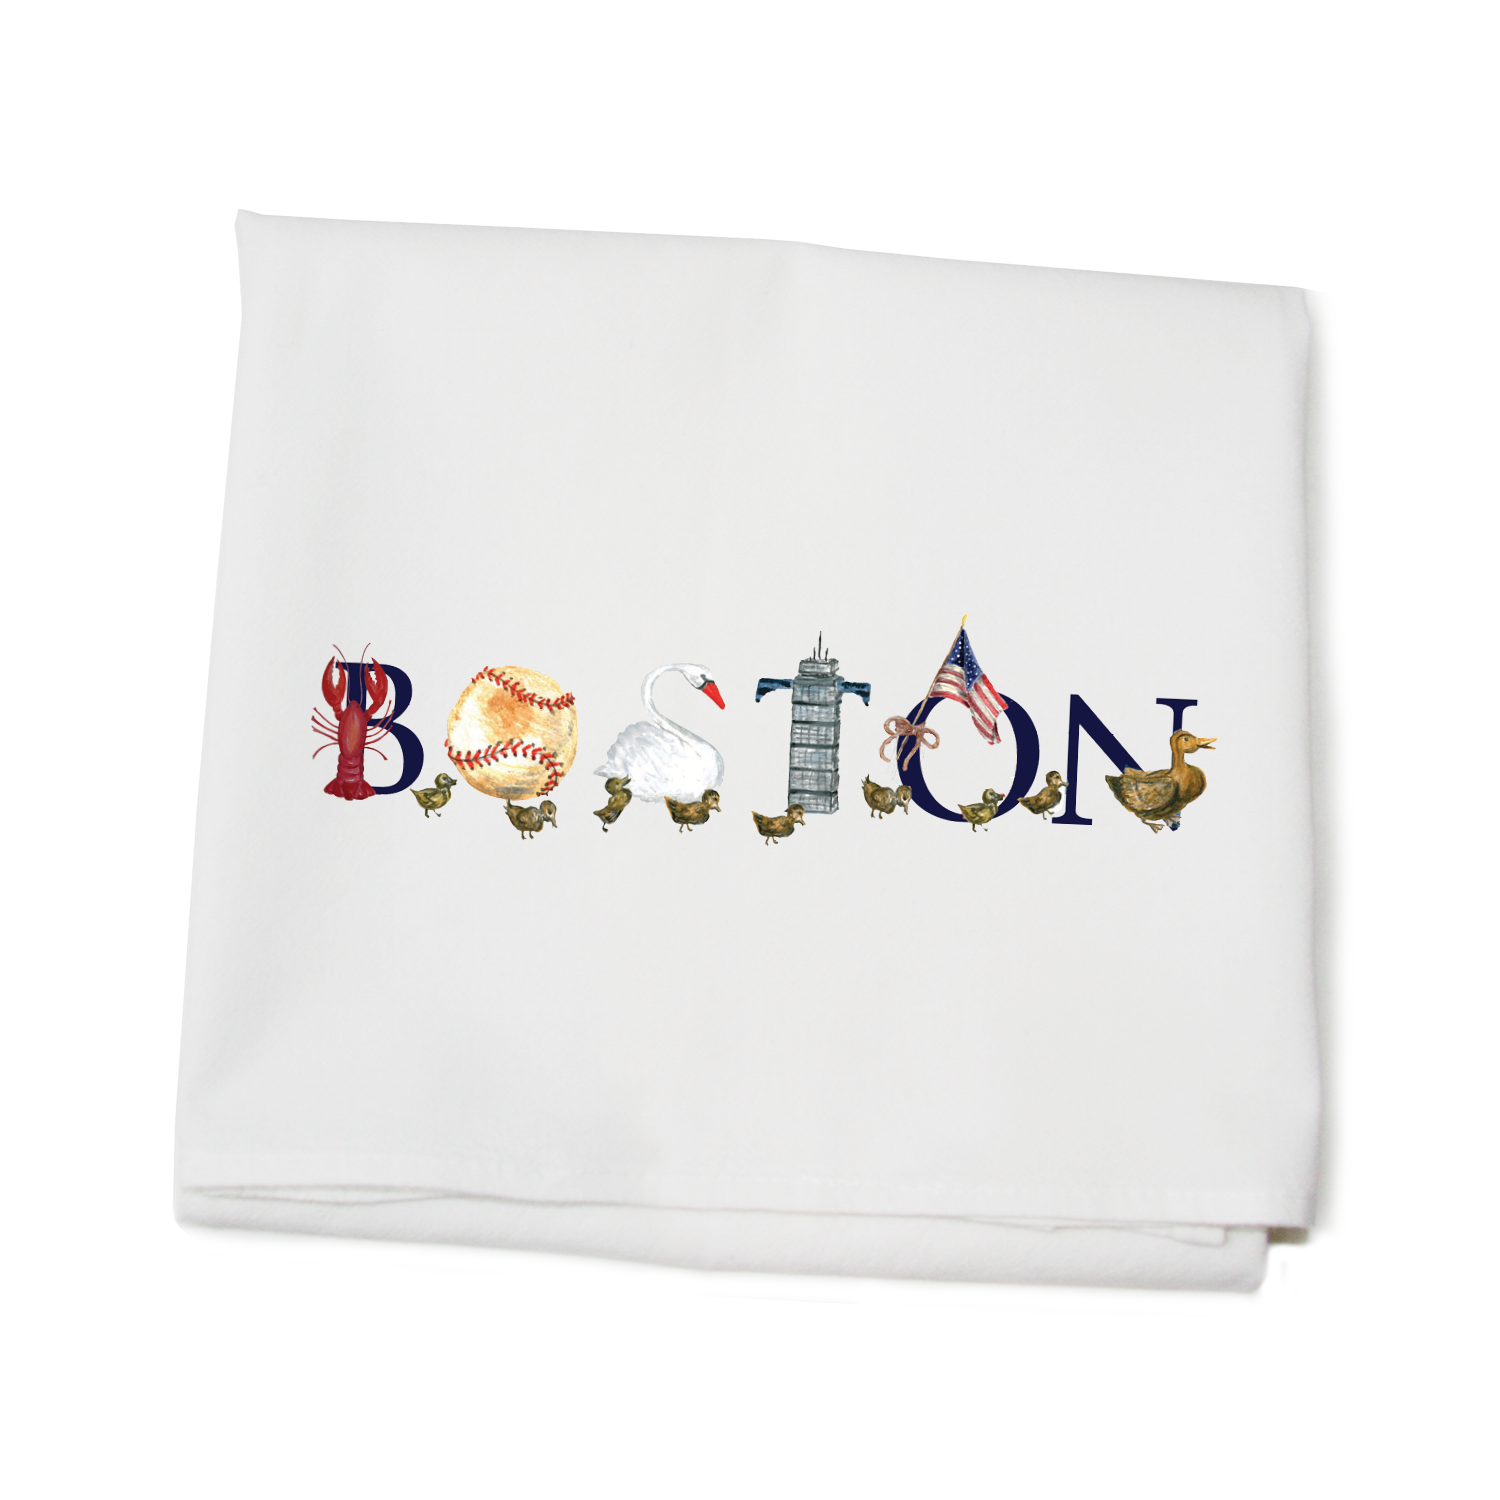 Boston flour sack towel